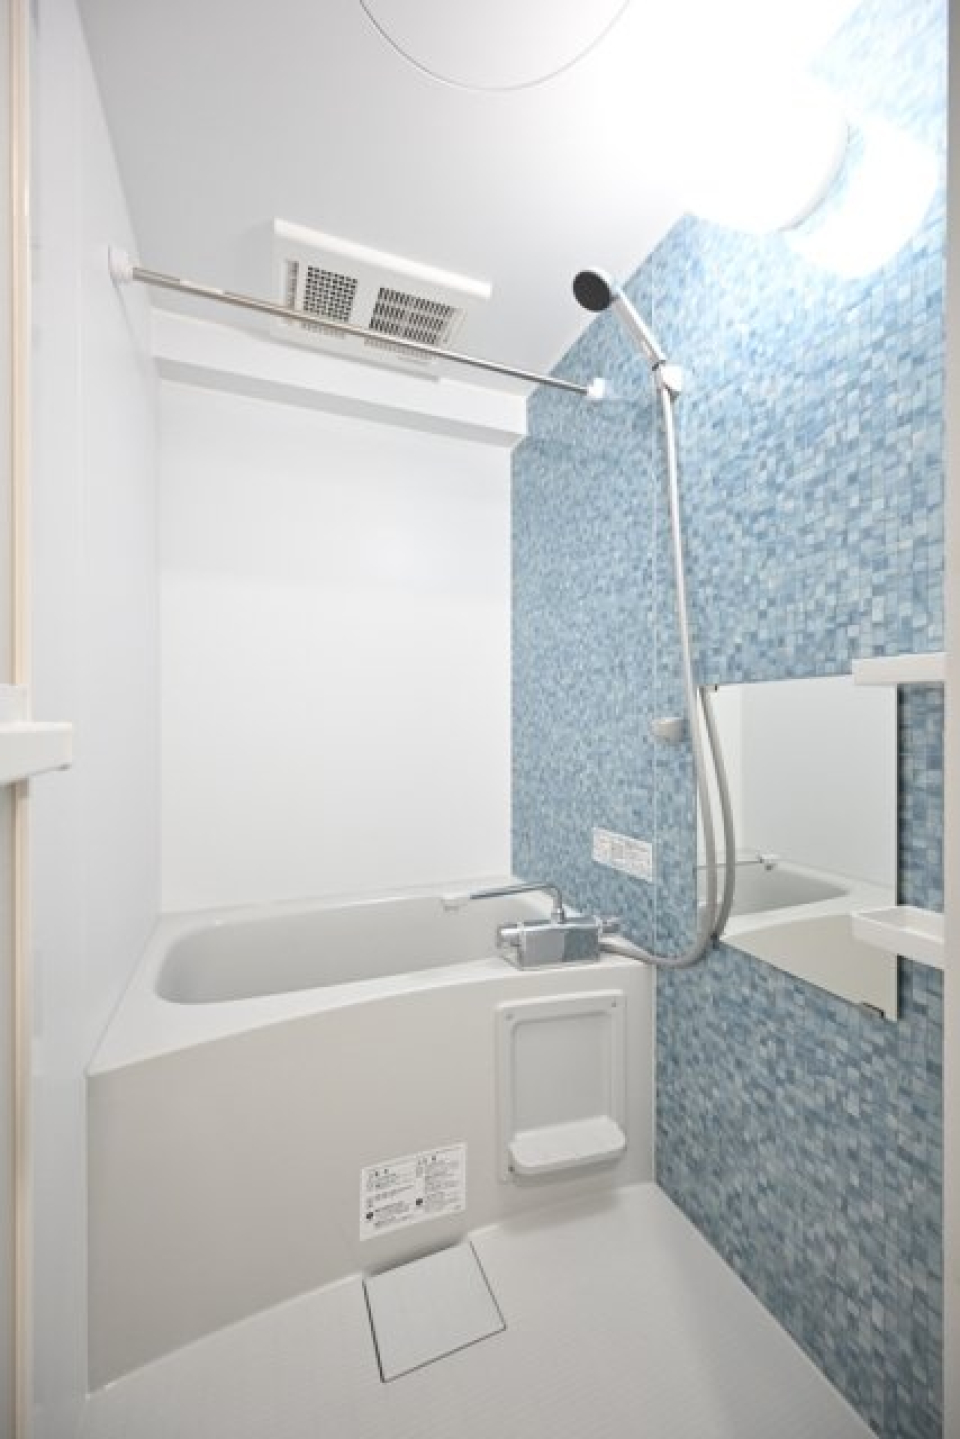 ライトブルーのパネルが導入されている浴室です。